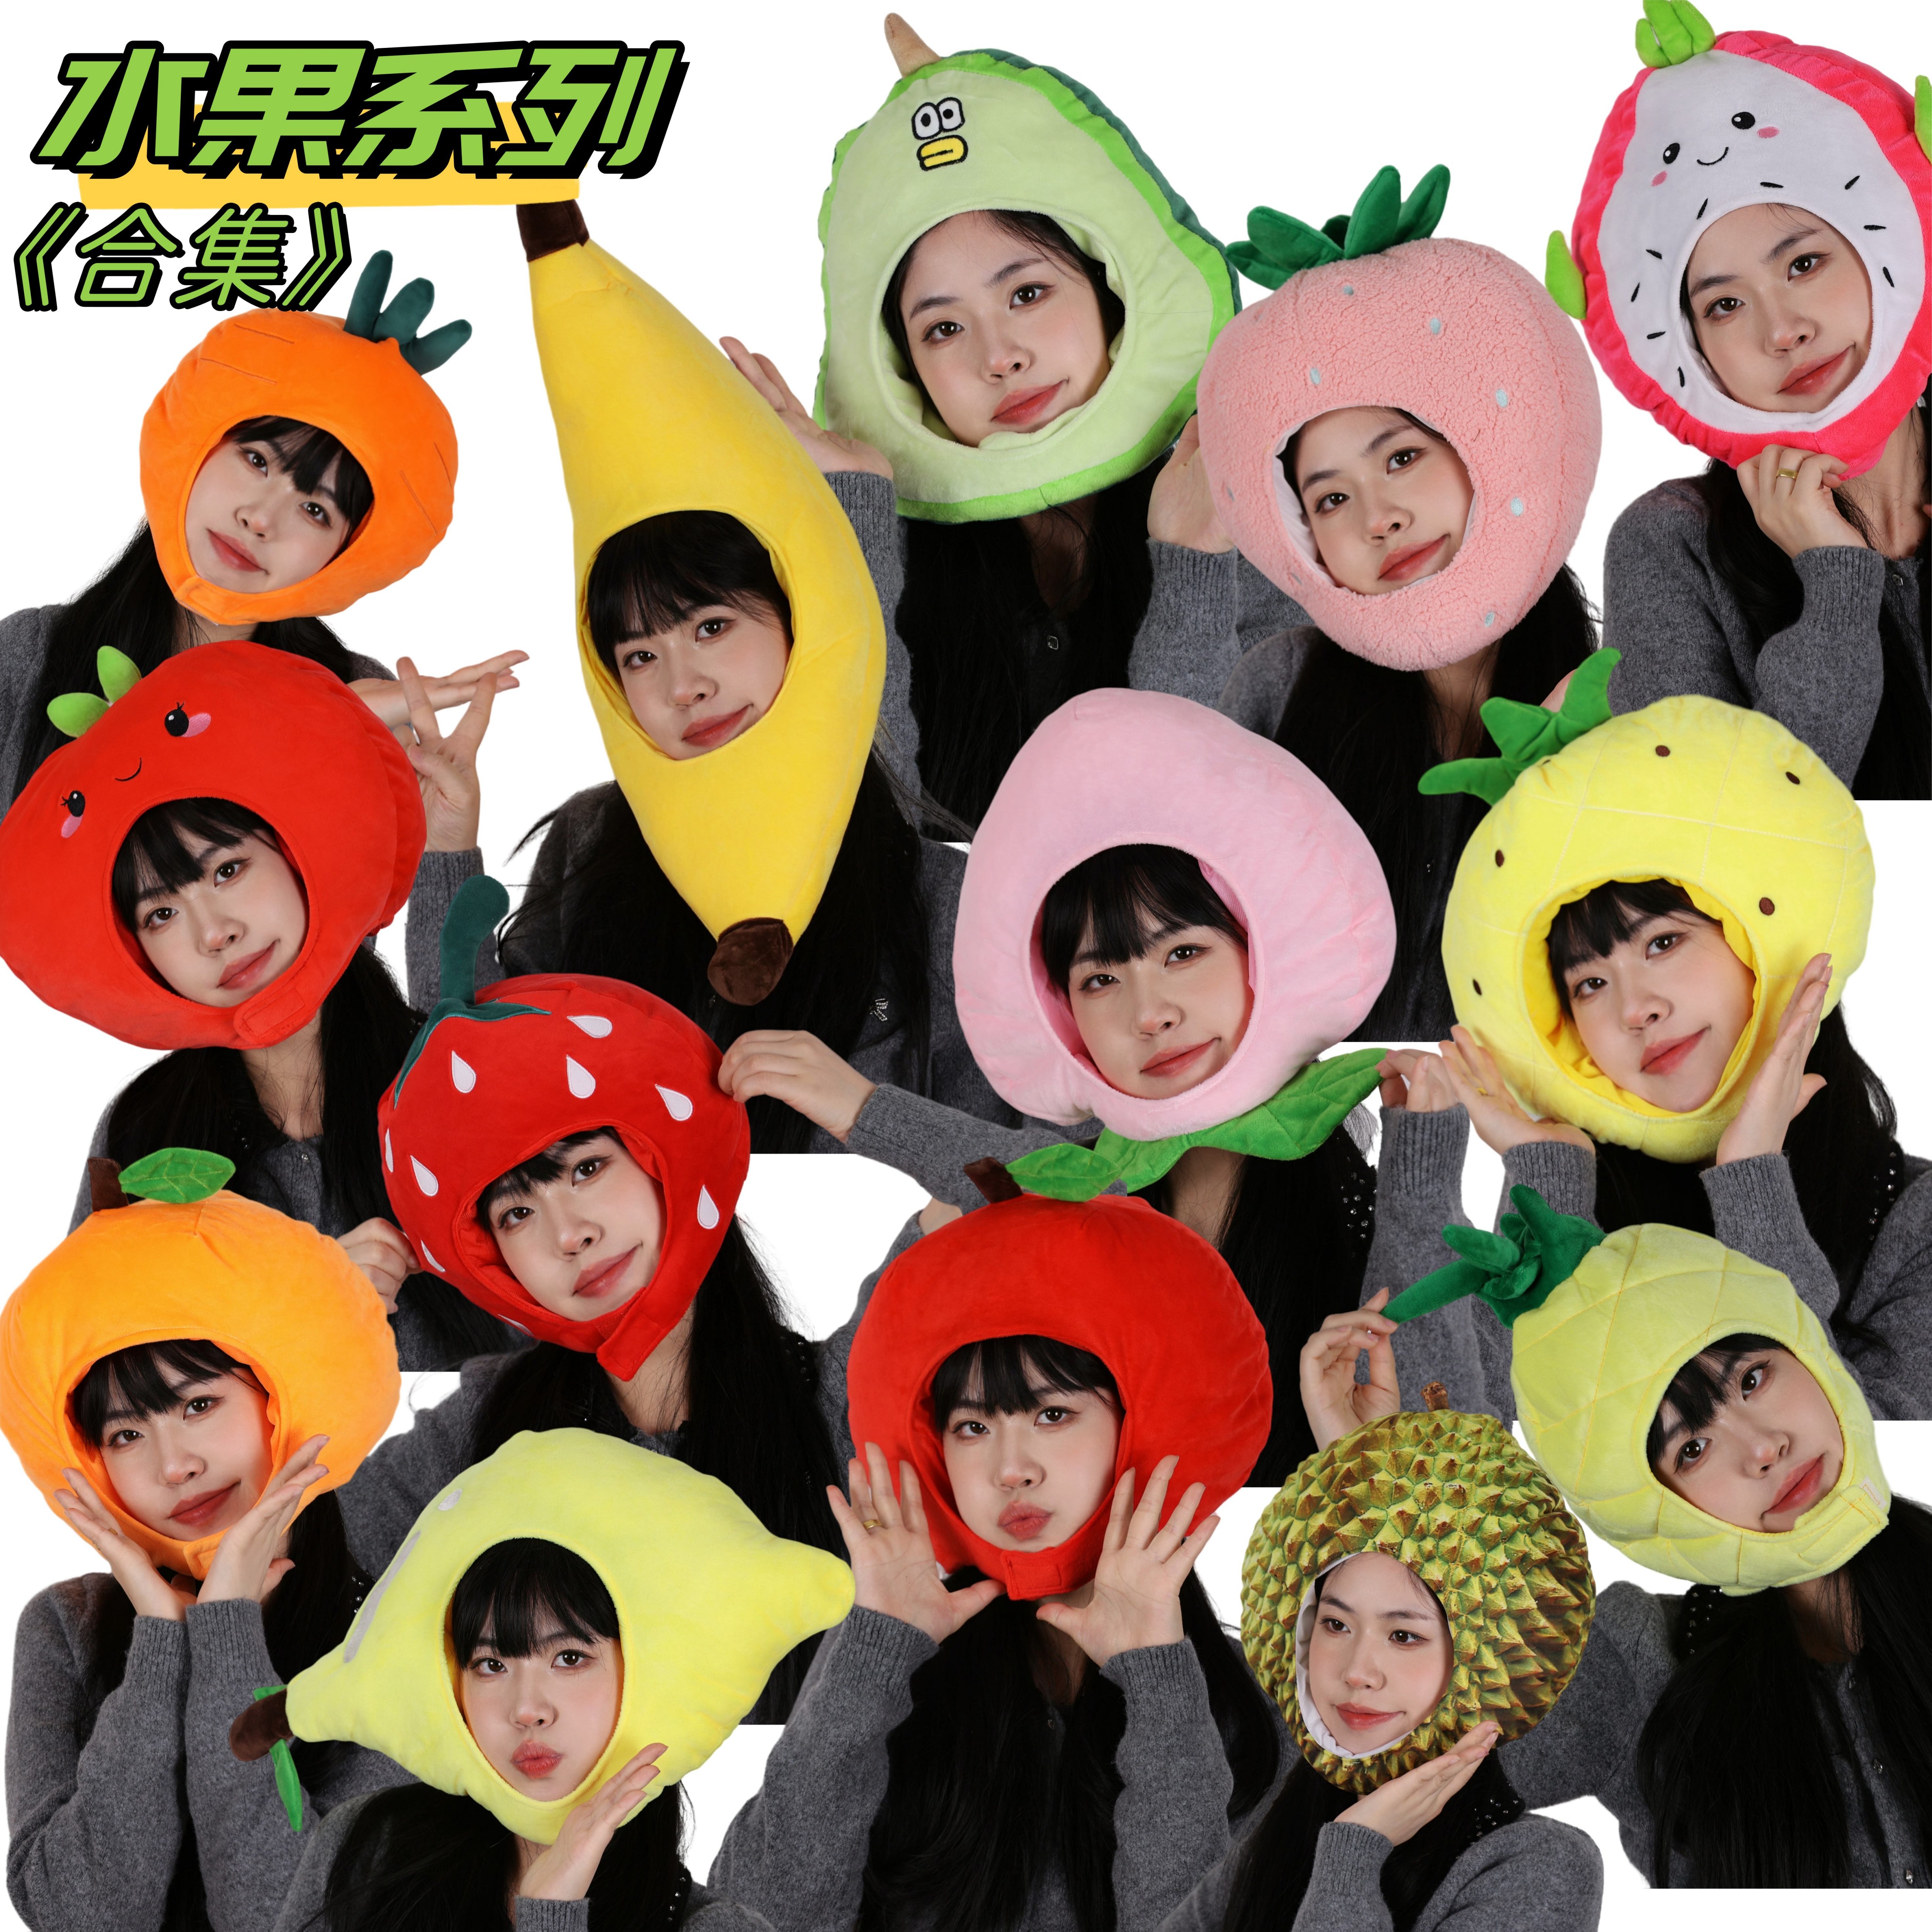 可爱搞怪卡通水果造型多款帽子苹果橙子草莓桃子头套拍照摄影道具